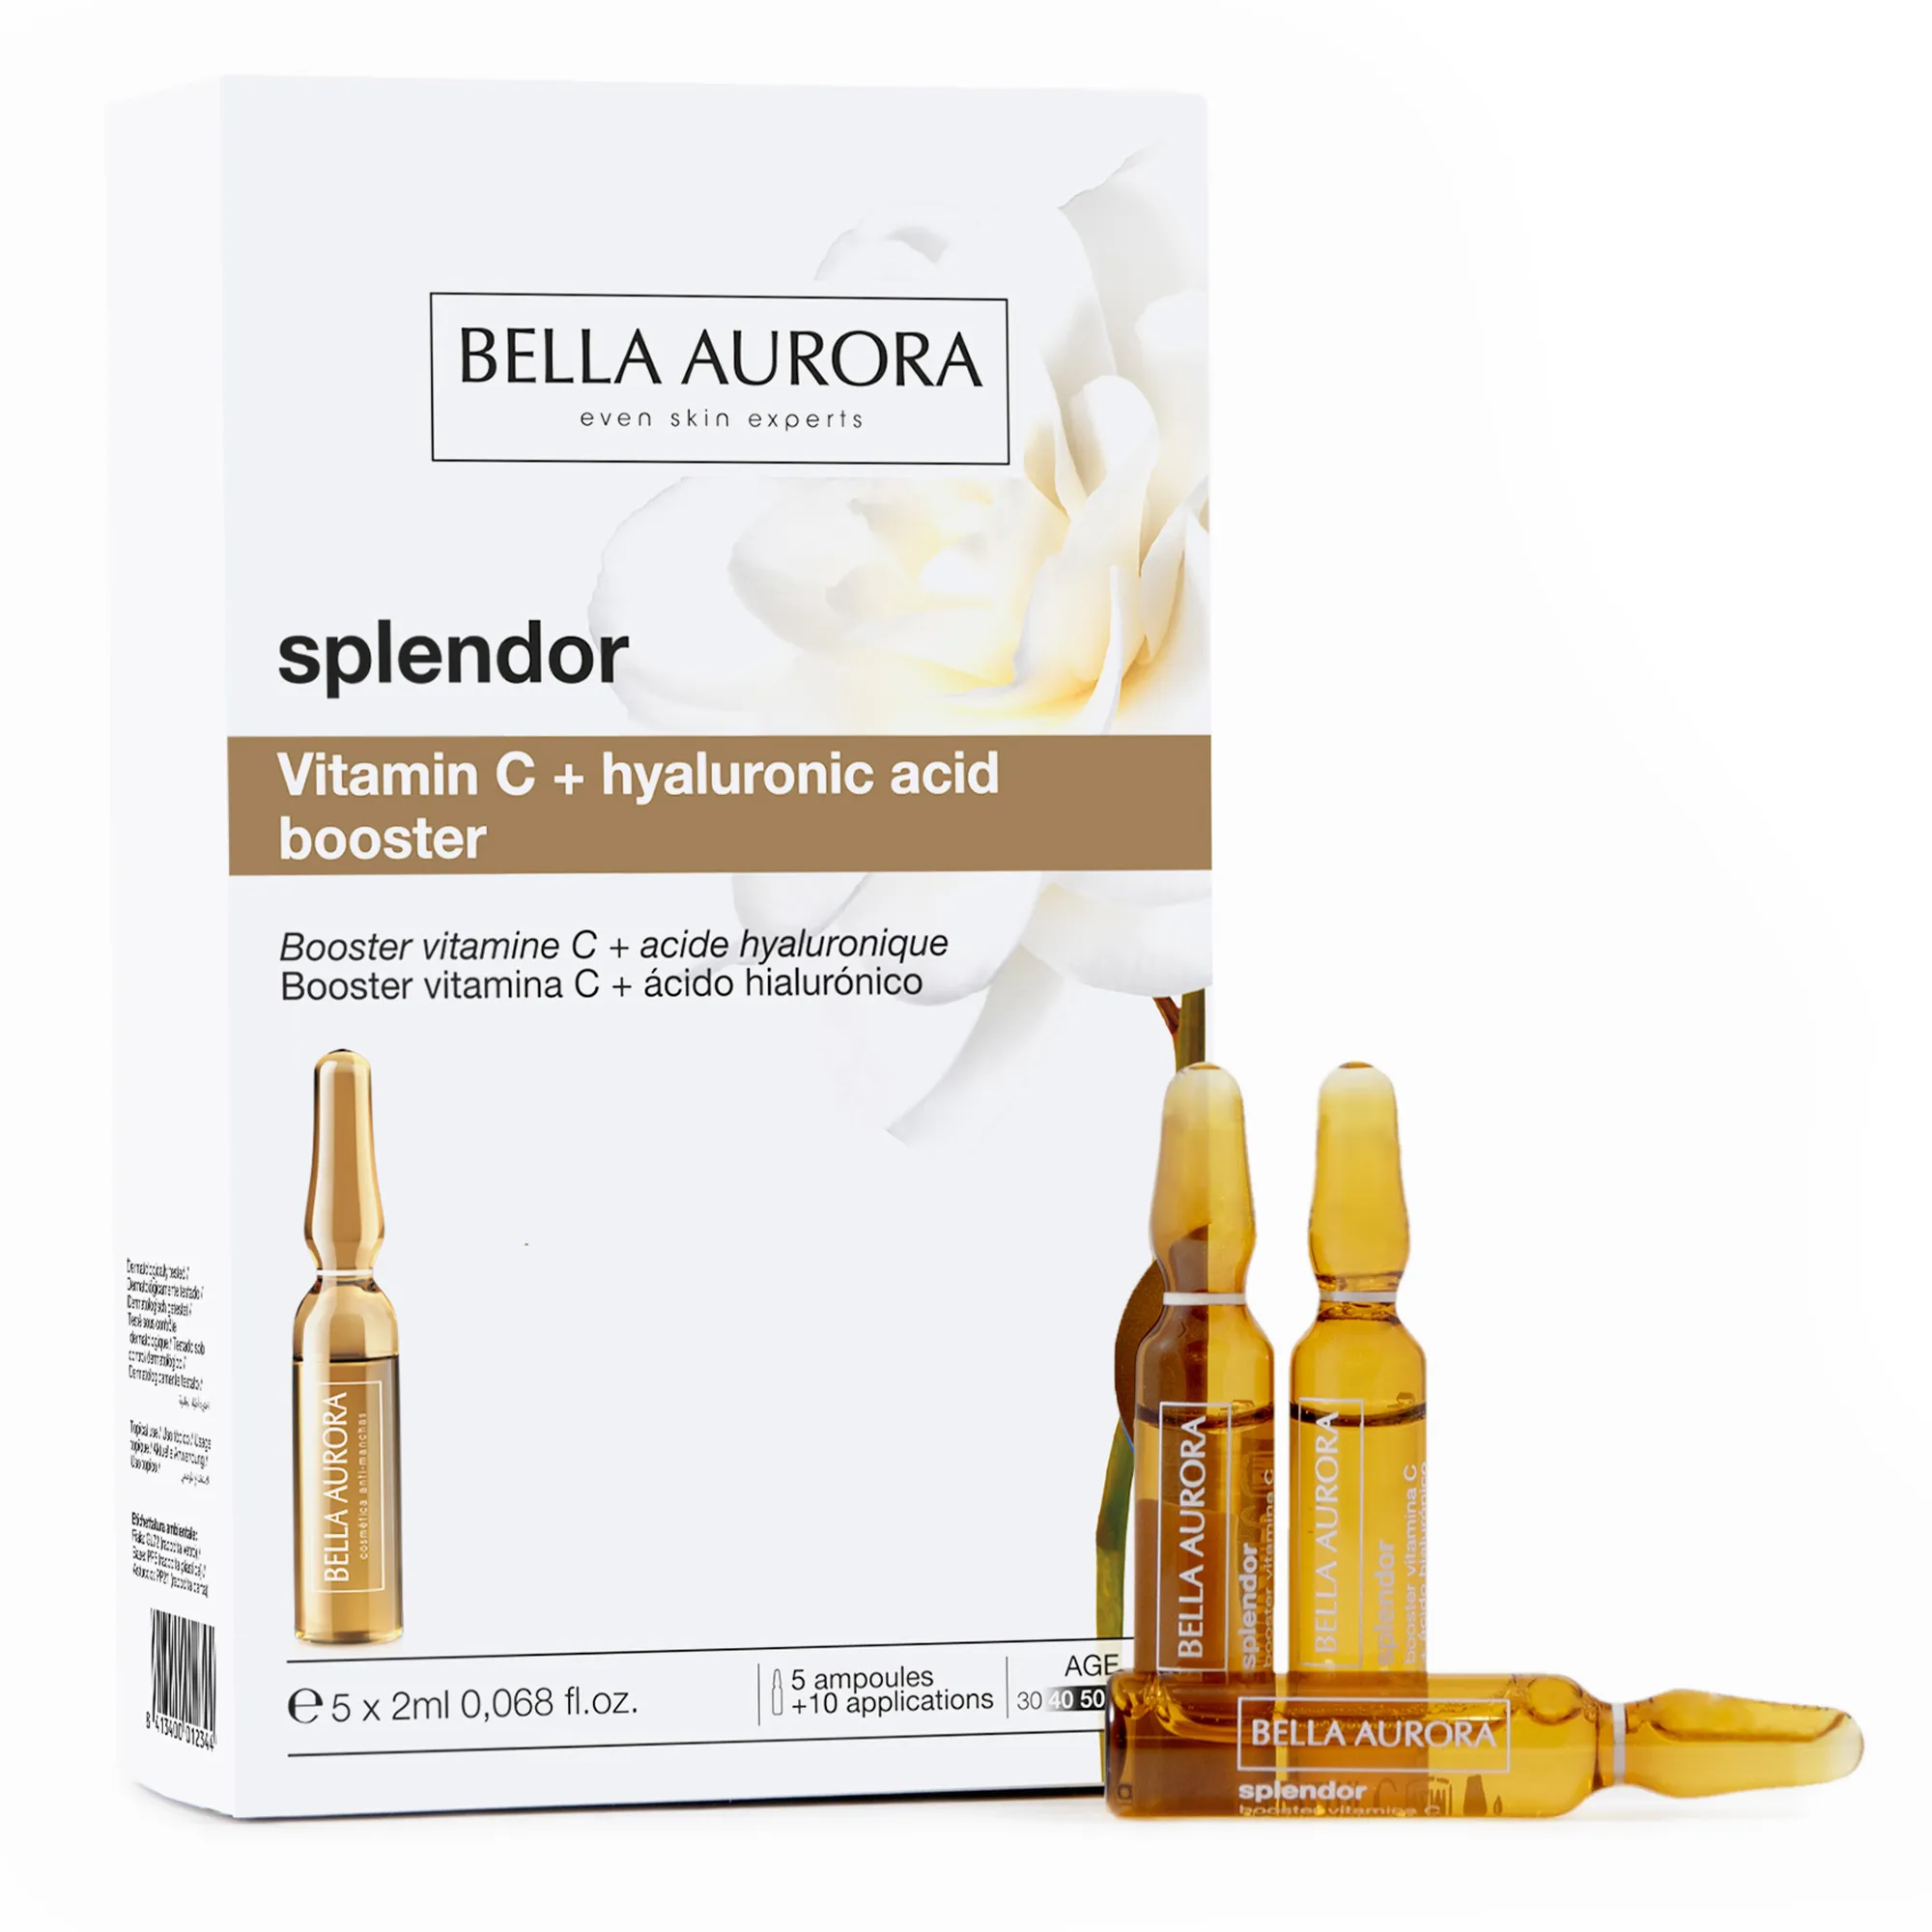 Bella Aurora Splendor przeciwstarzeniowy booster z witaminą C i kwasem hialuronowym w ampułkach, 5 x 2 ml